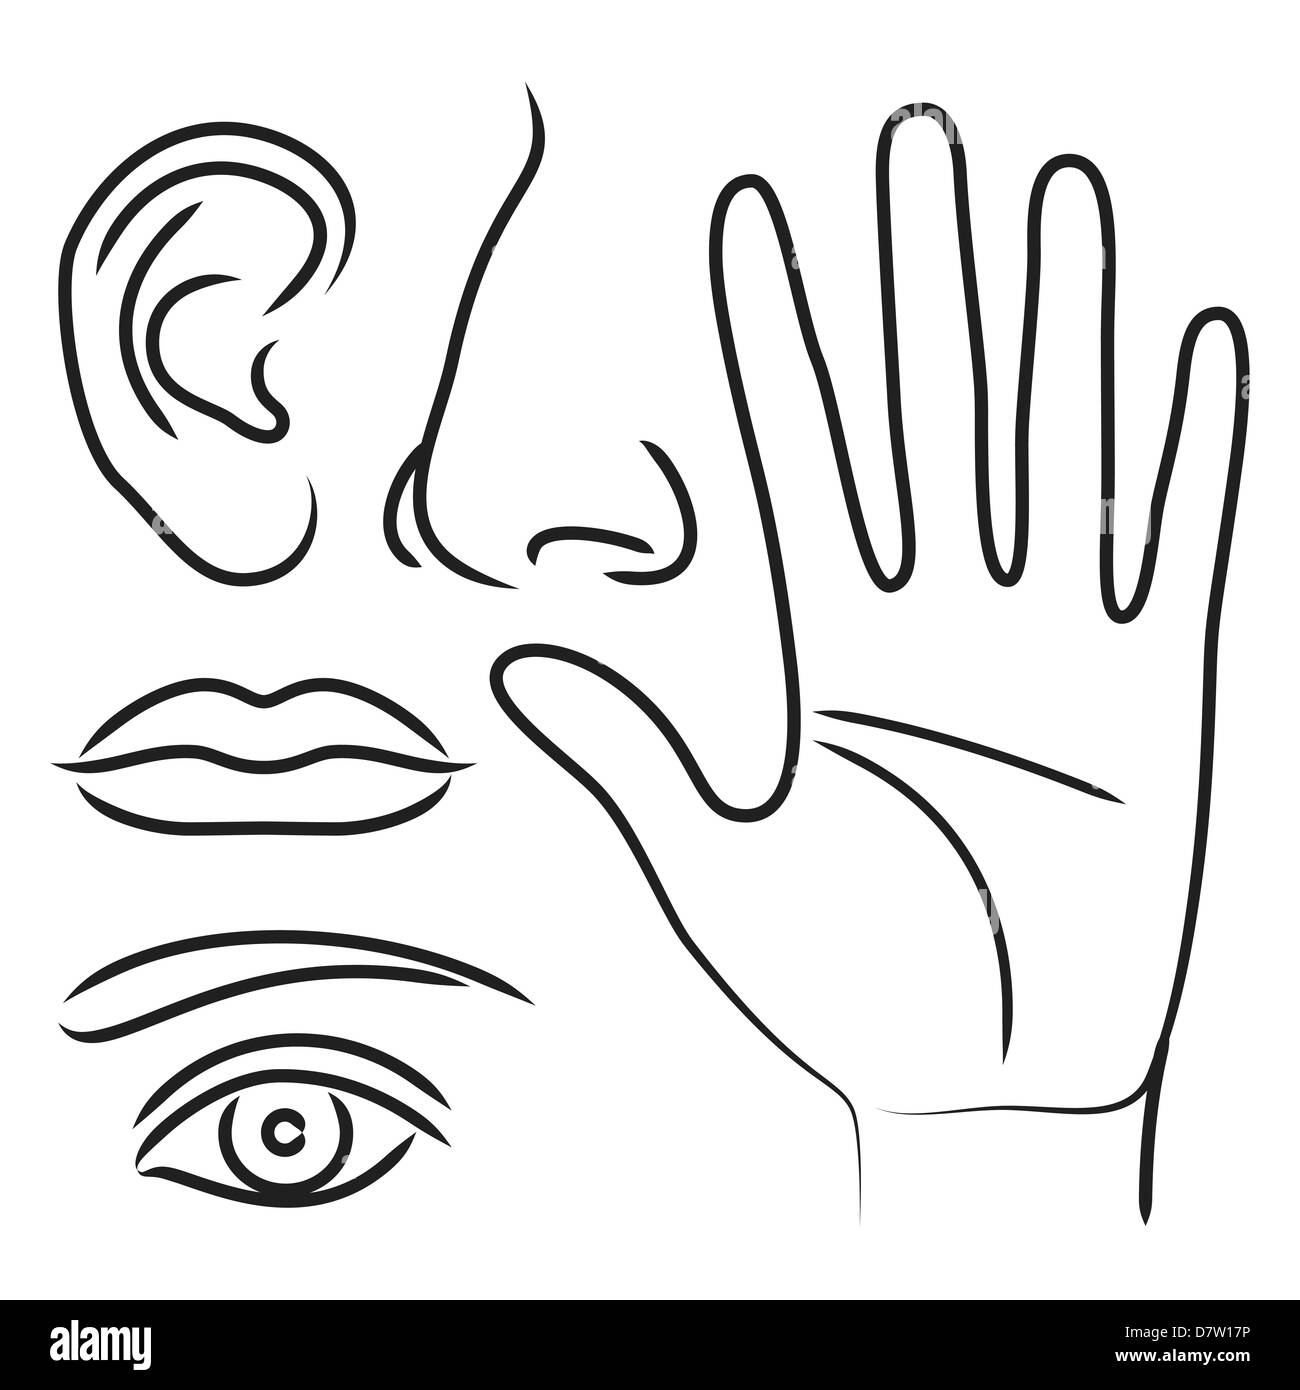 Les organes sensoriels de l'oreille, la main, le nez, la bouche et les yeux Banque D'Images